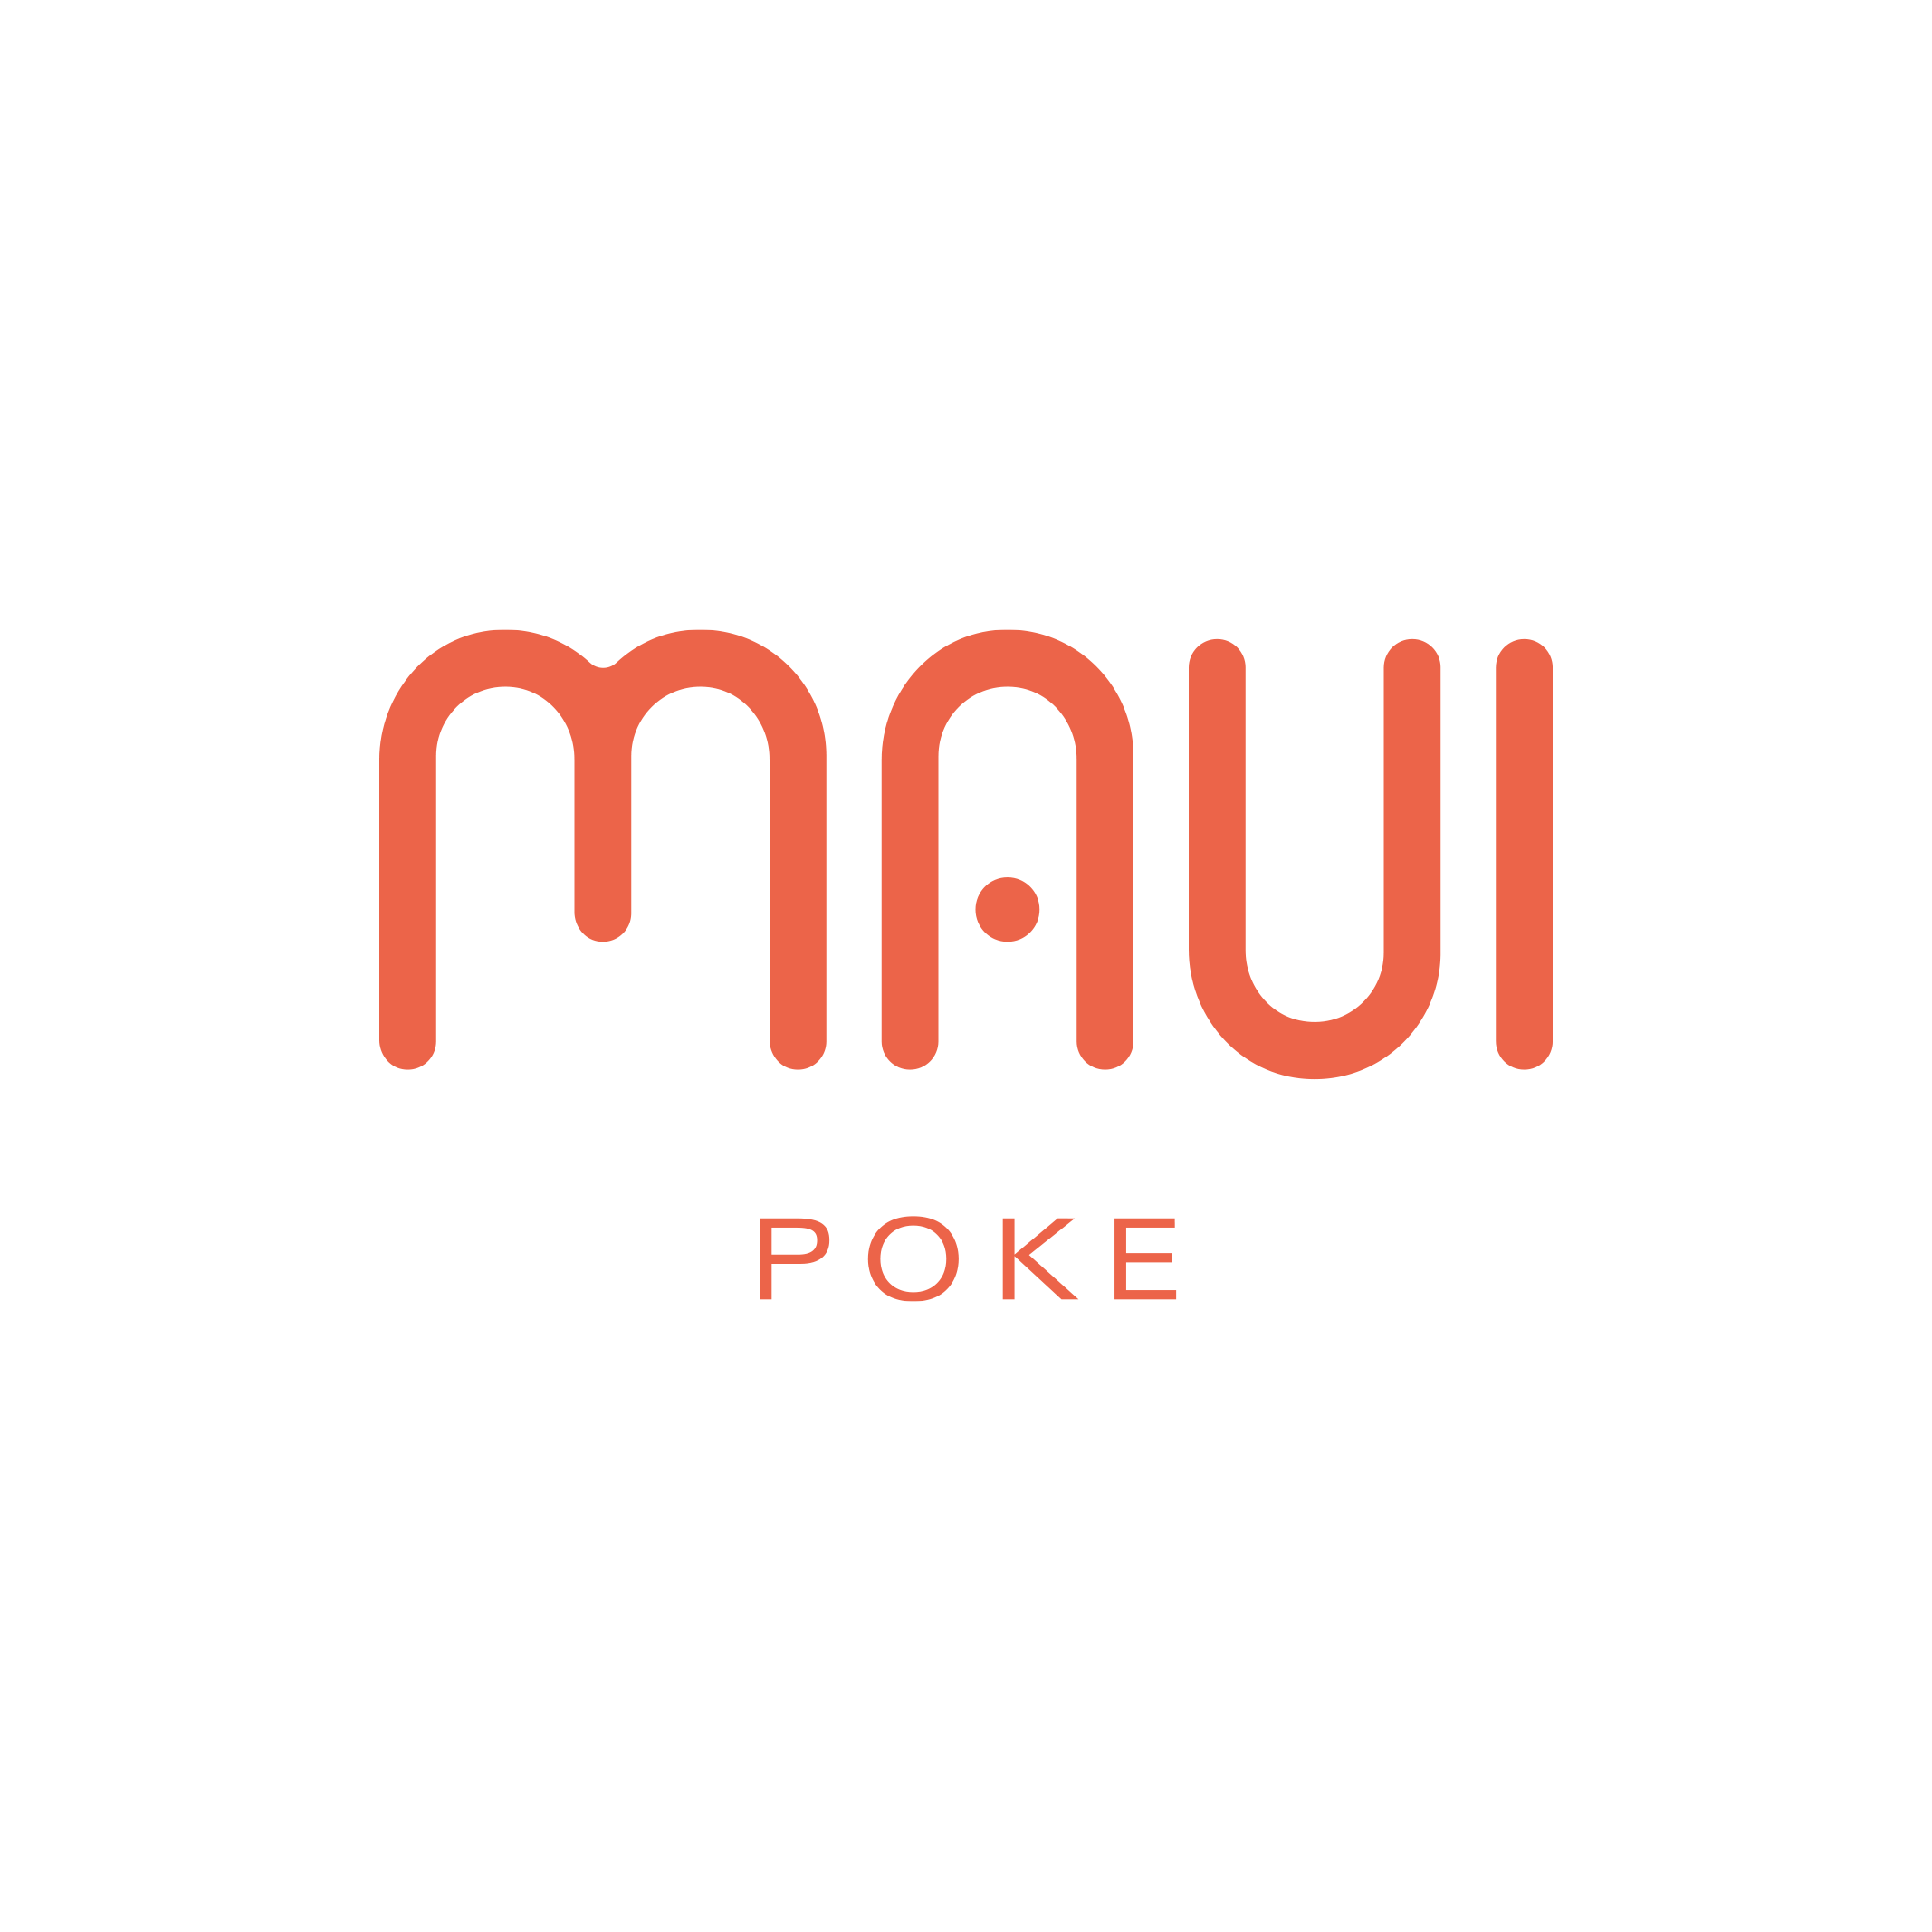 MAUI POKE